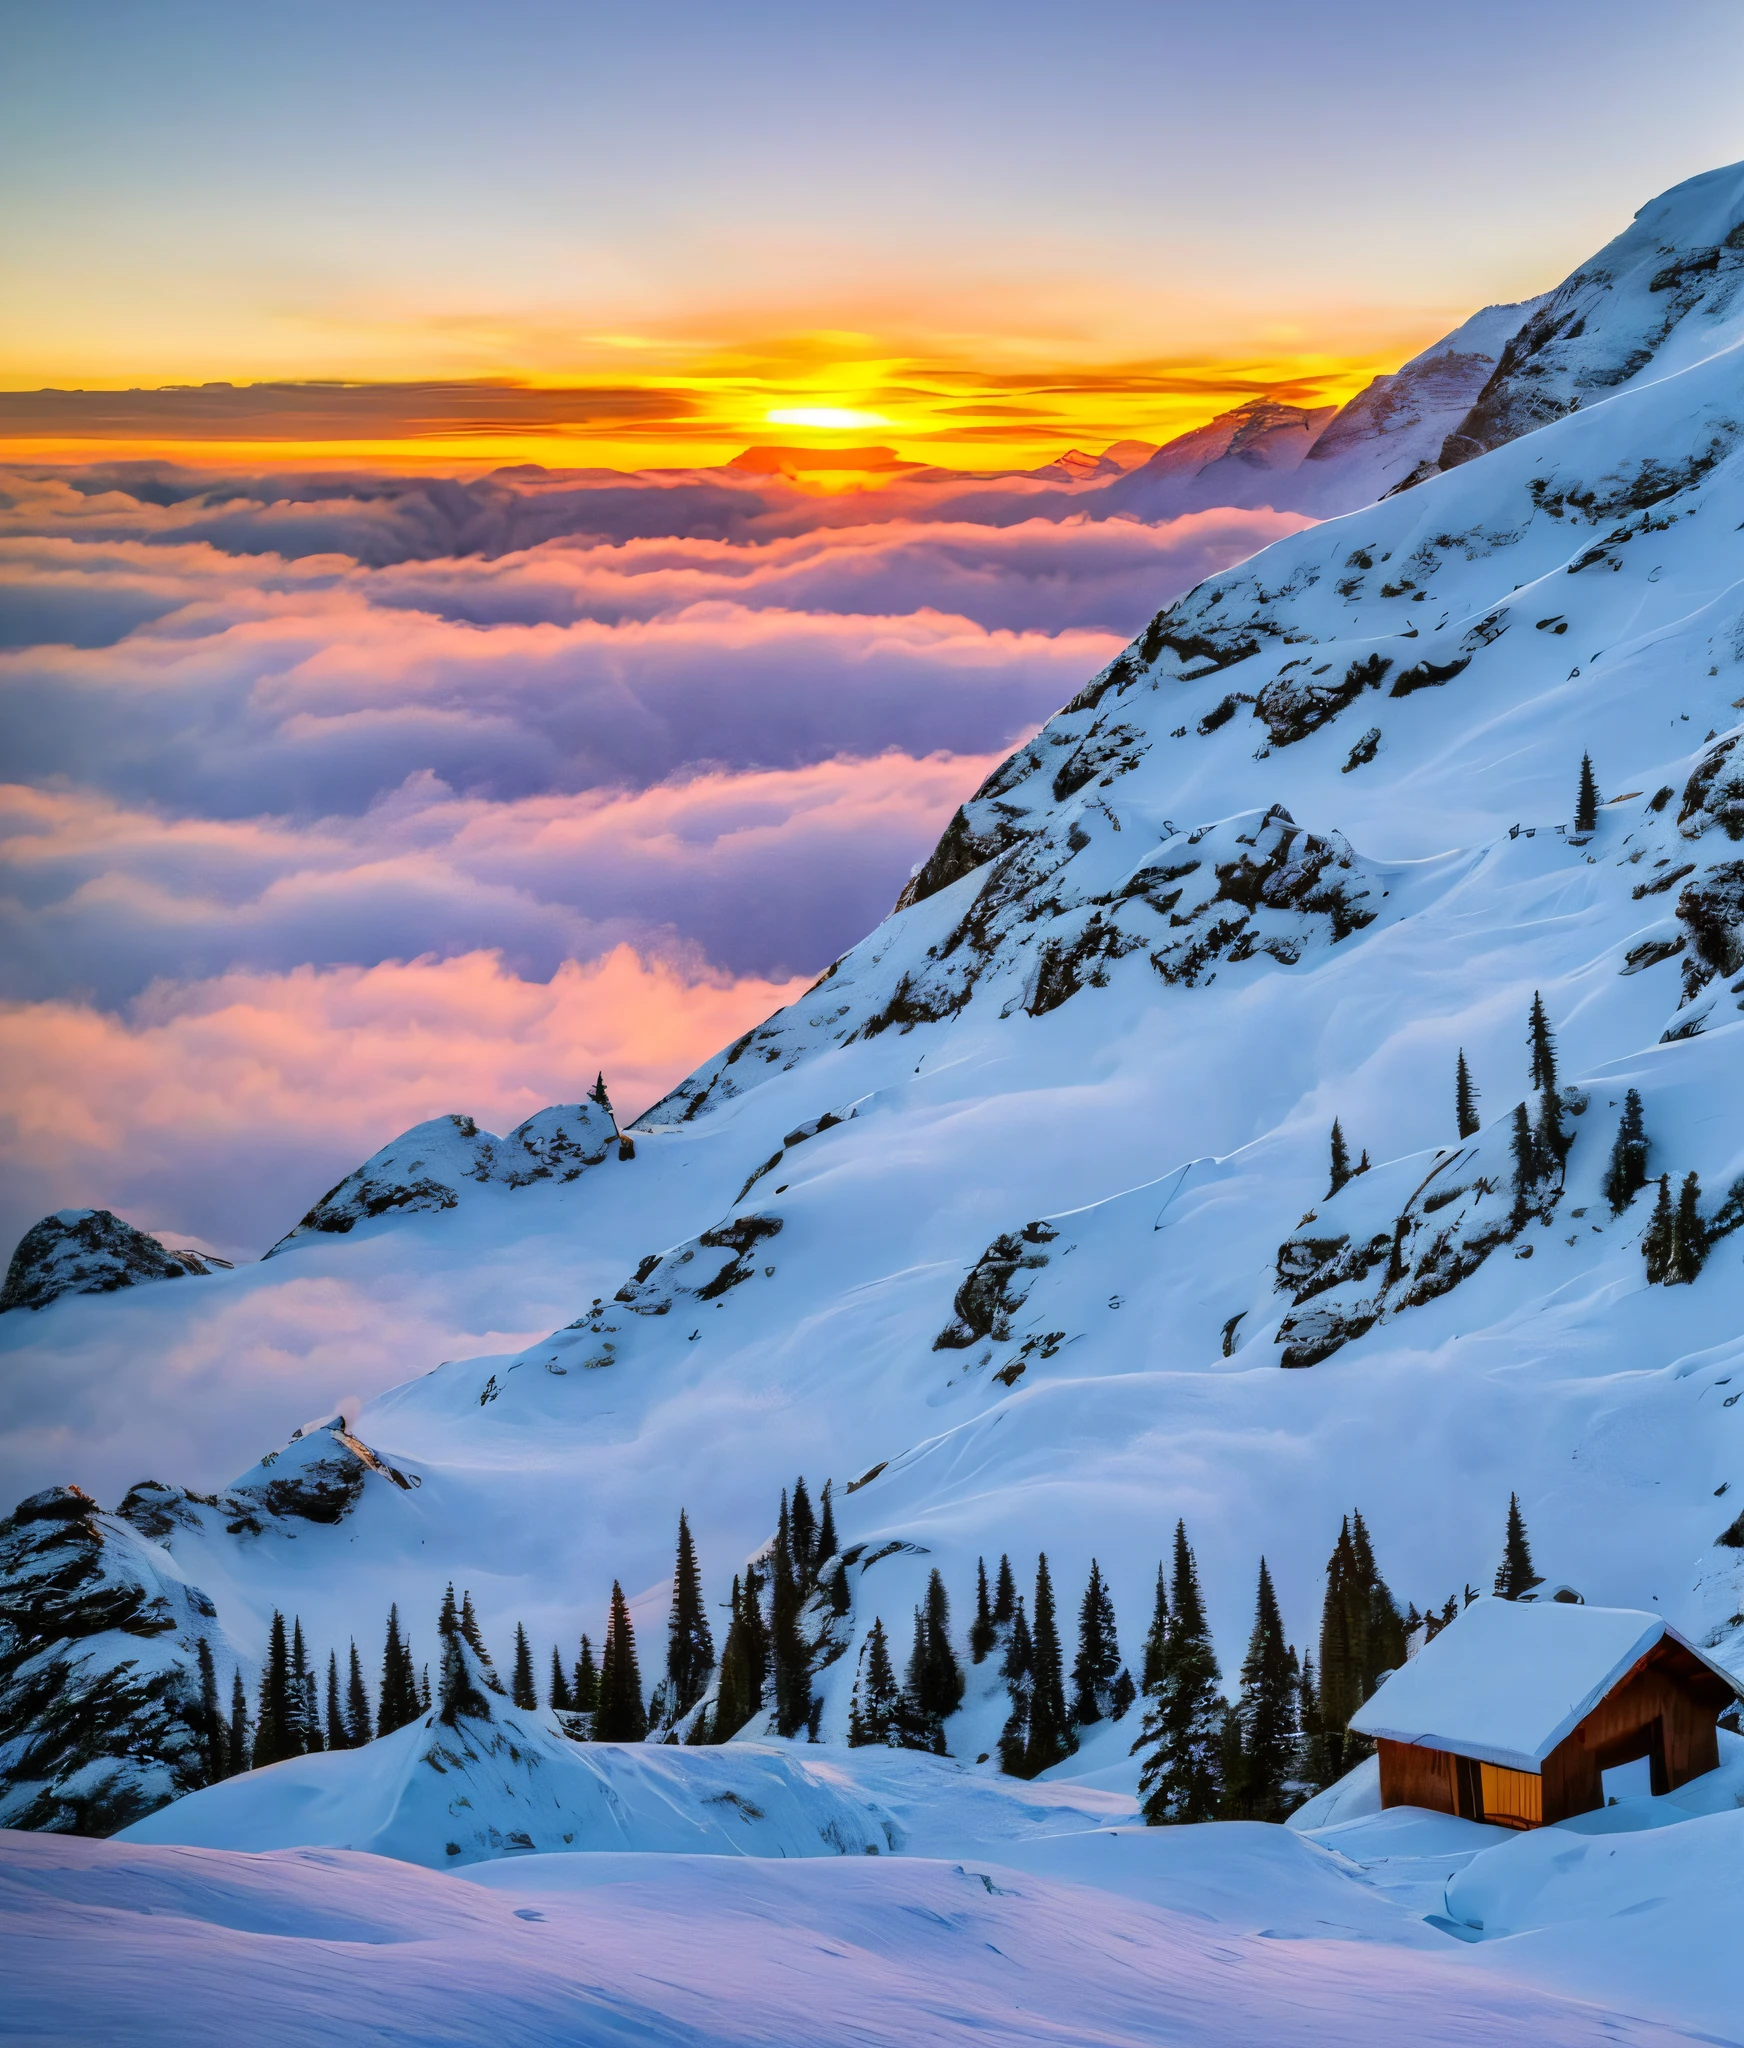 Crie uma cabana no sopé de uma montanha com um lindo pôr do sol, no pico das montanhas nevadas, várias árvores ao redor